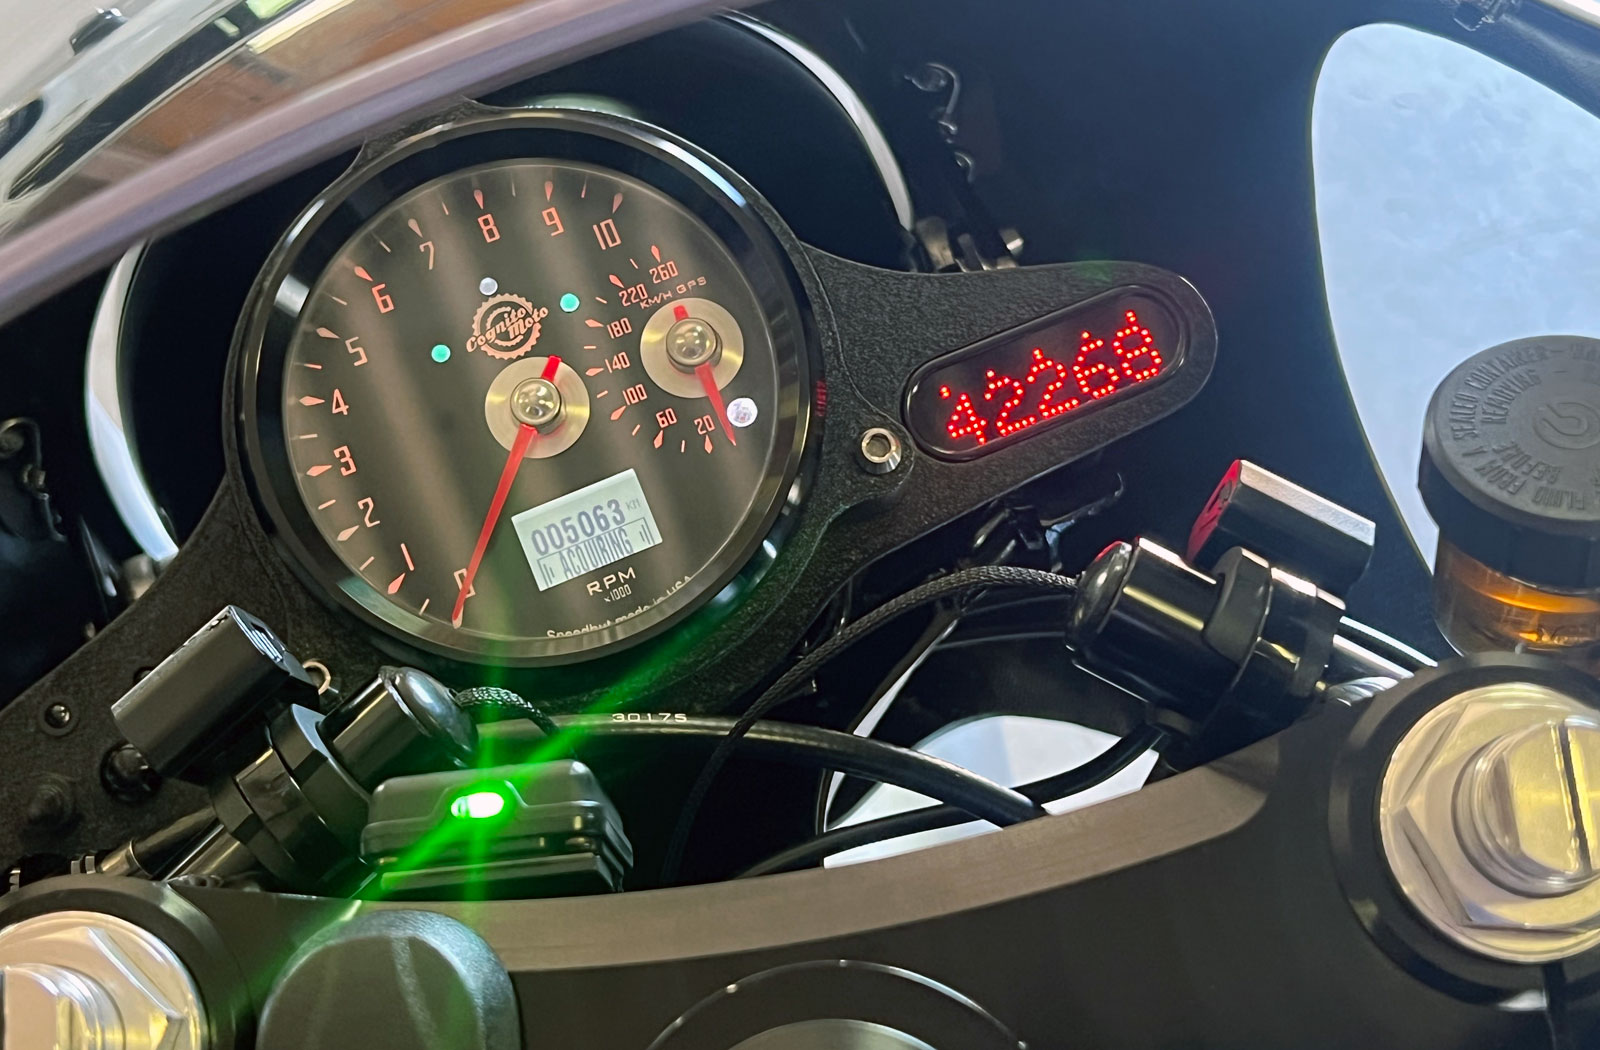 Cognito Moto speedometer